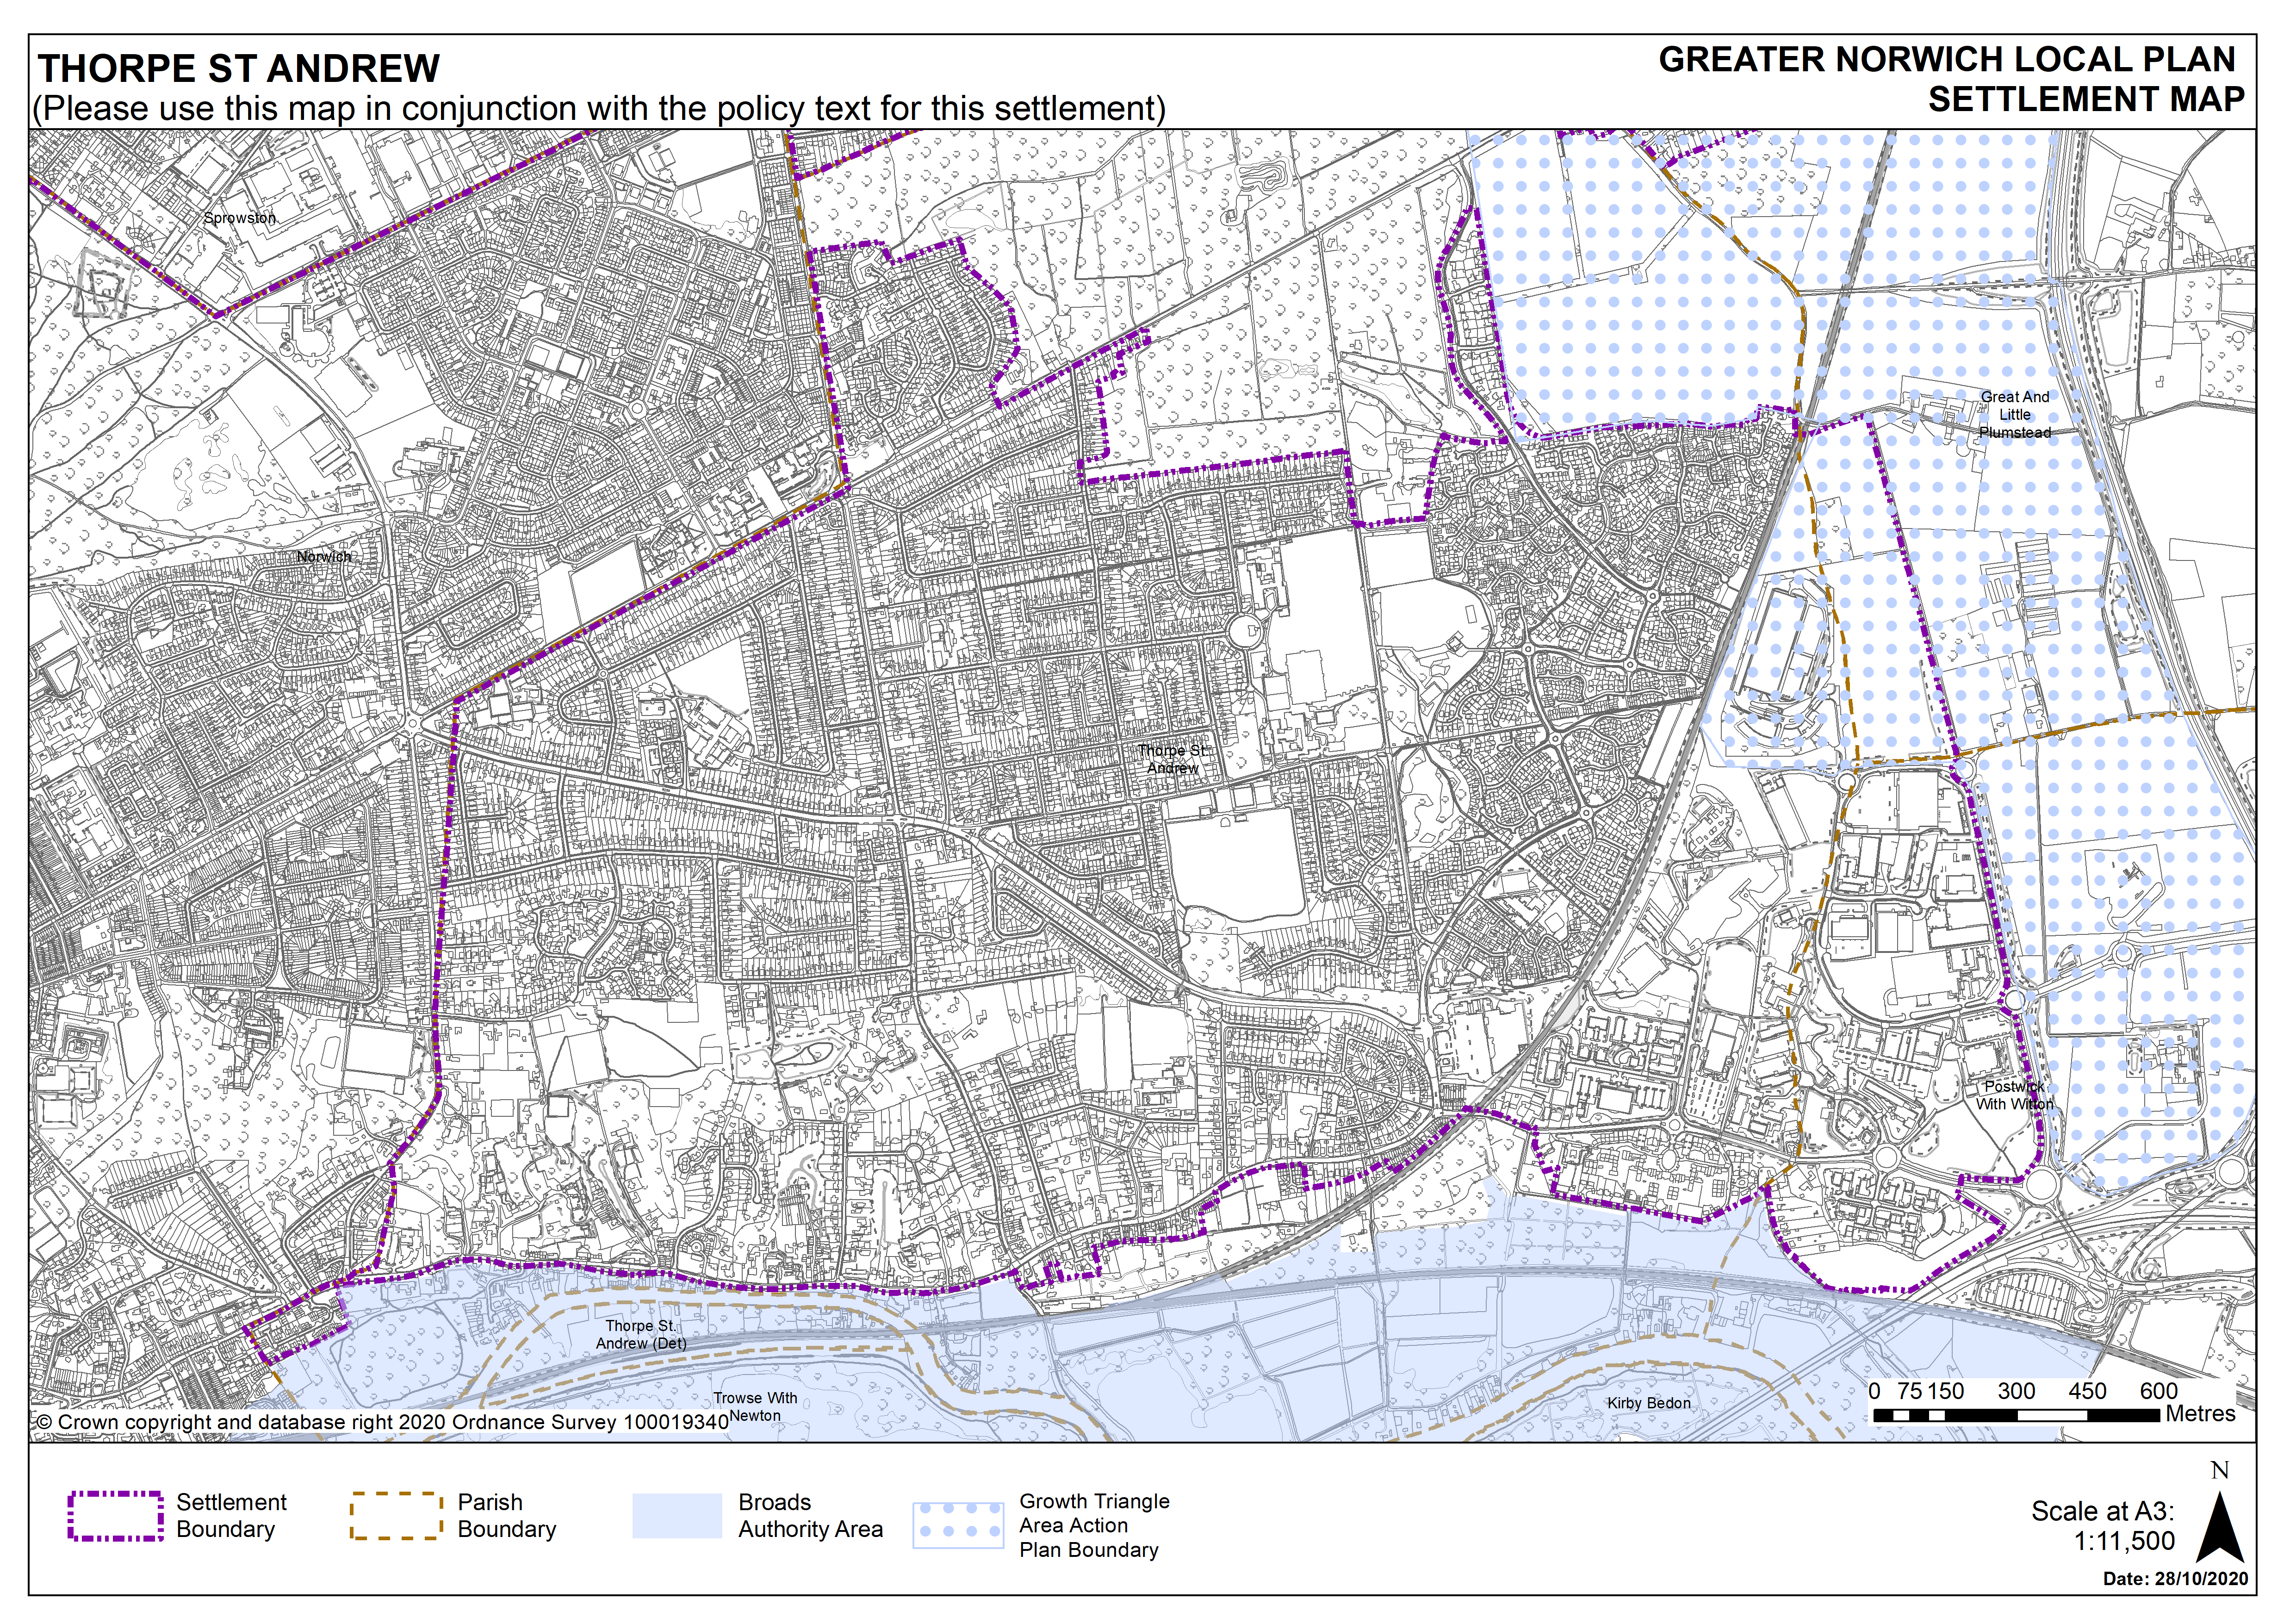 Thorpe St Andrew Settlement Map